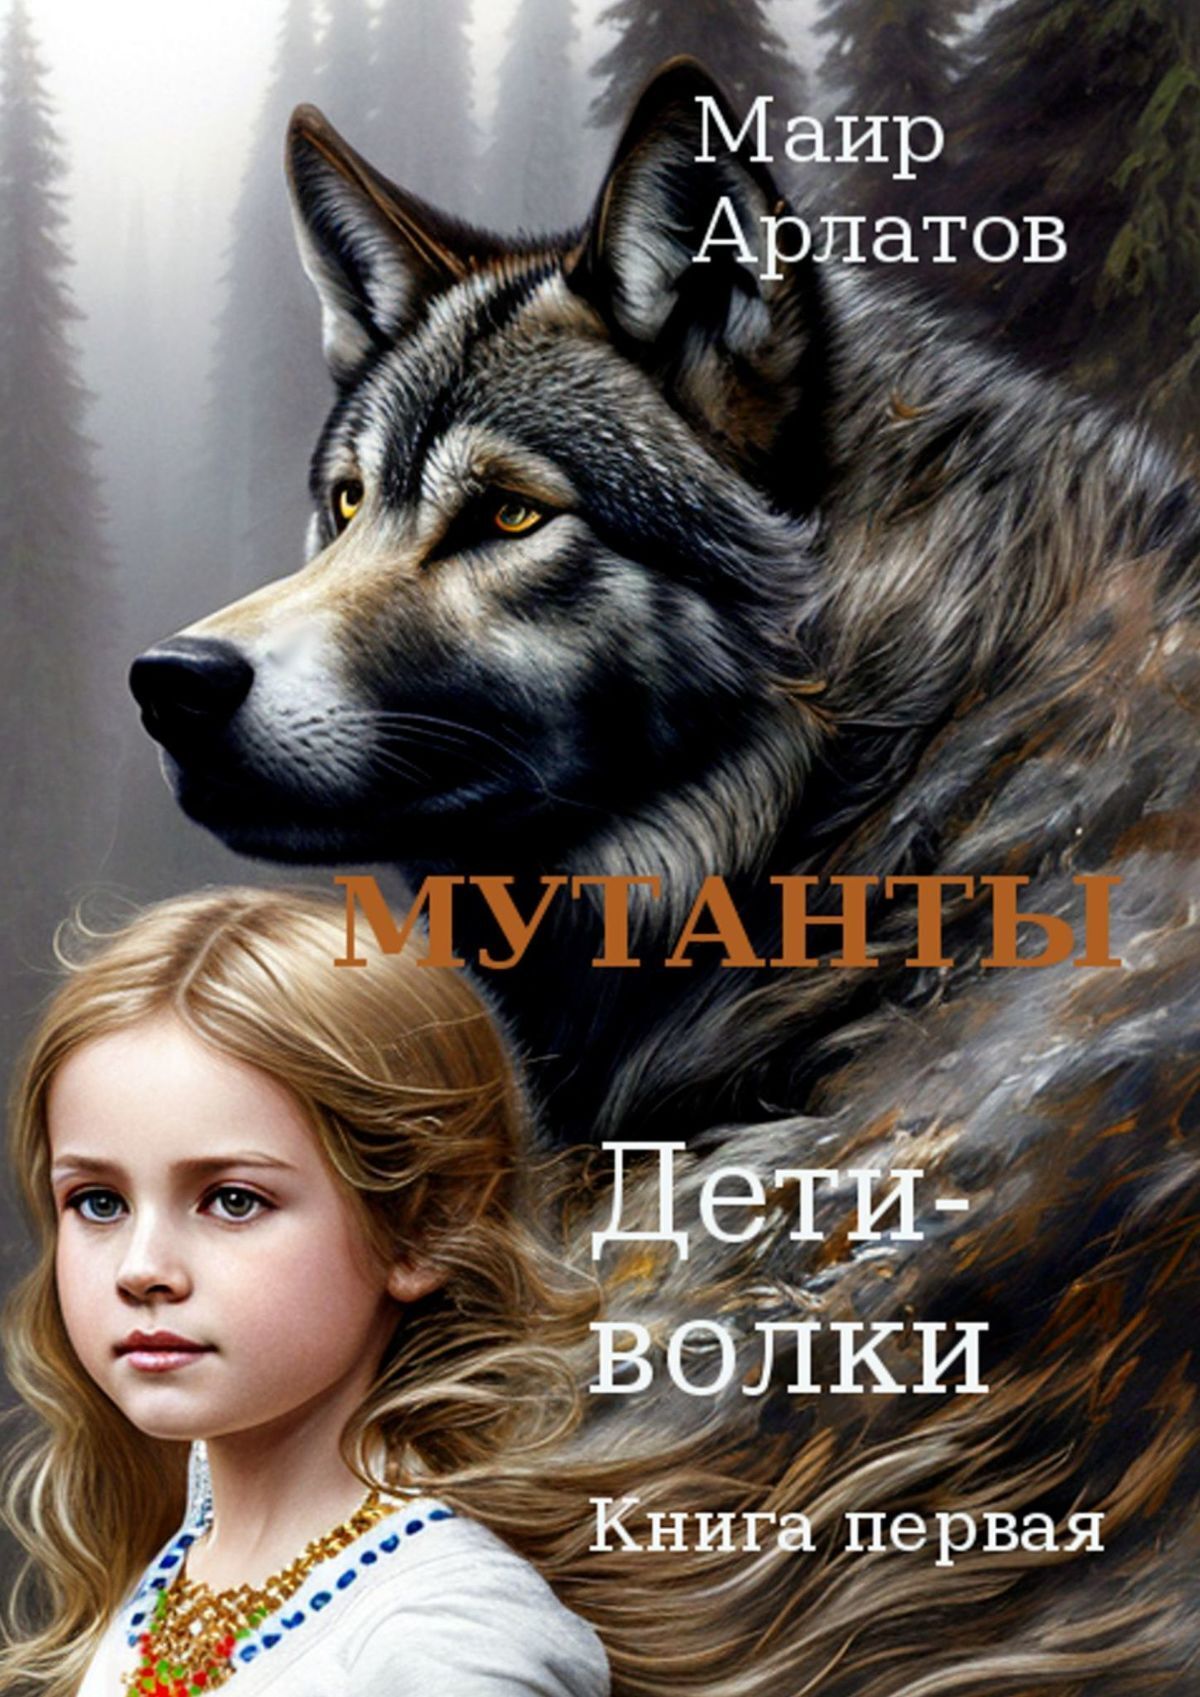 Читать книги про волков. Волк для детей. Книга волк. Девушка волк книга. Детская книга про волка.